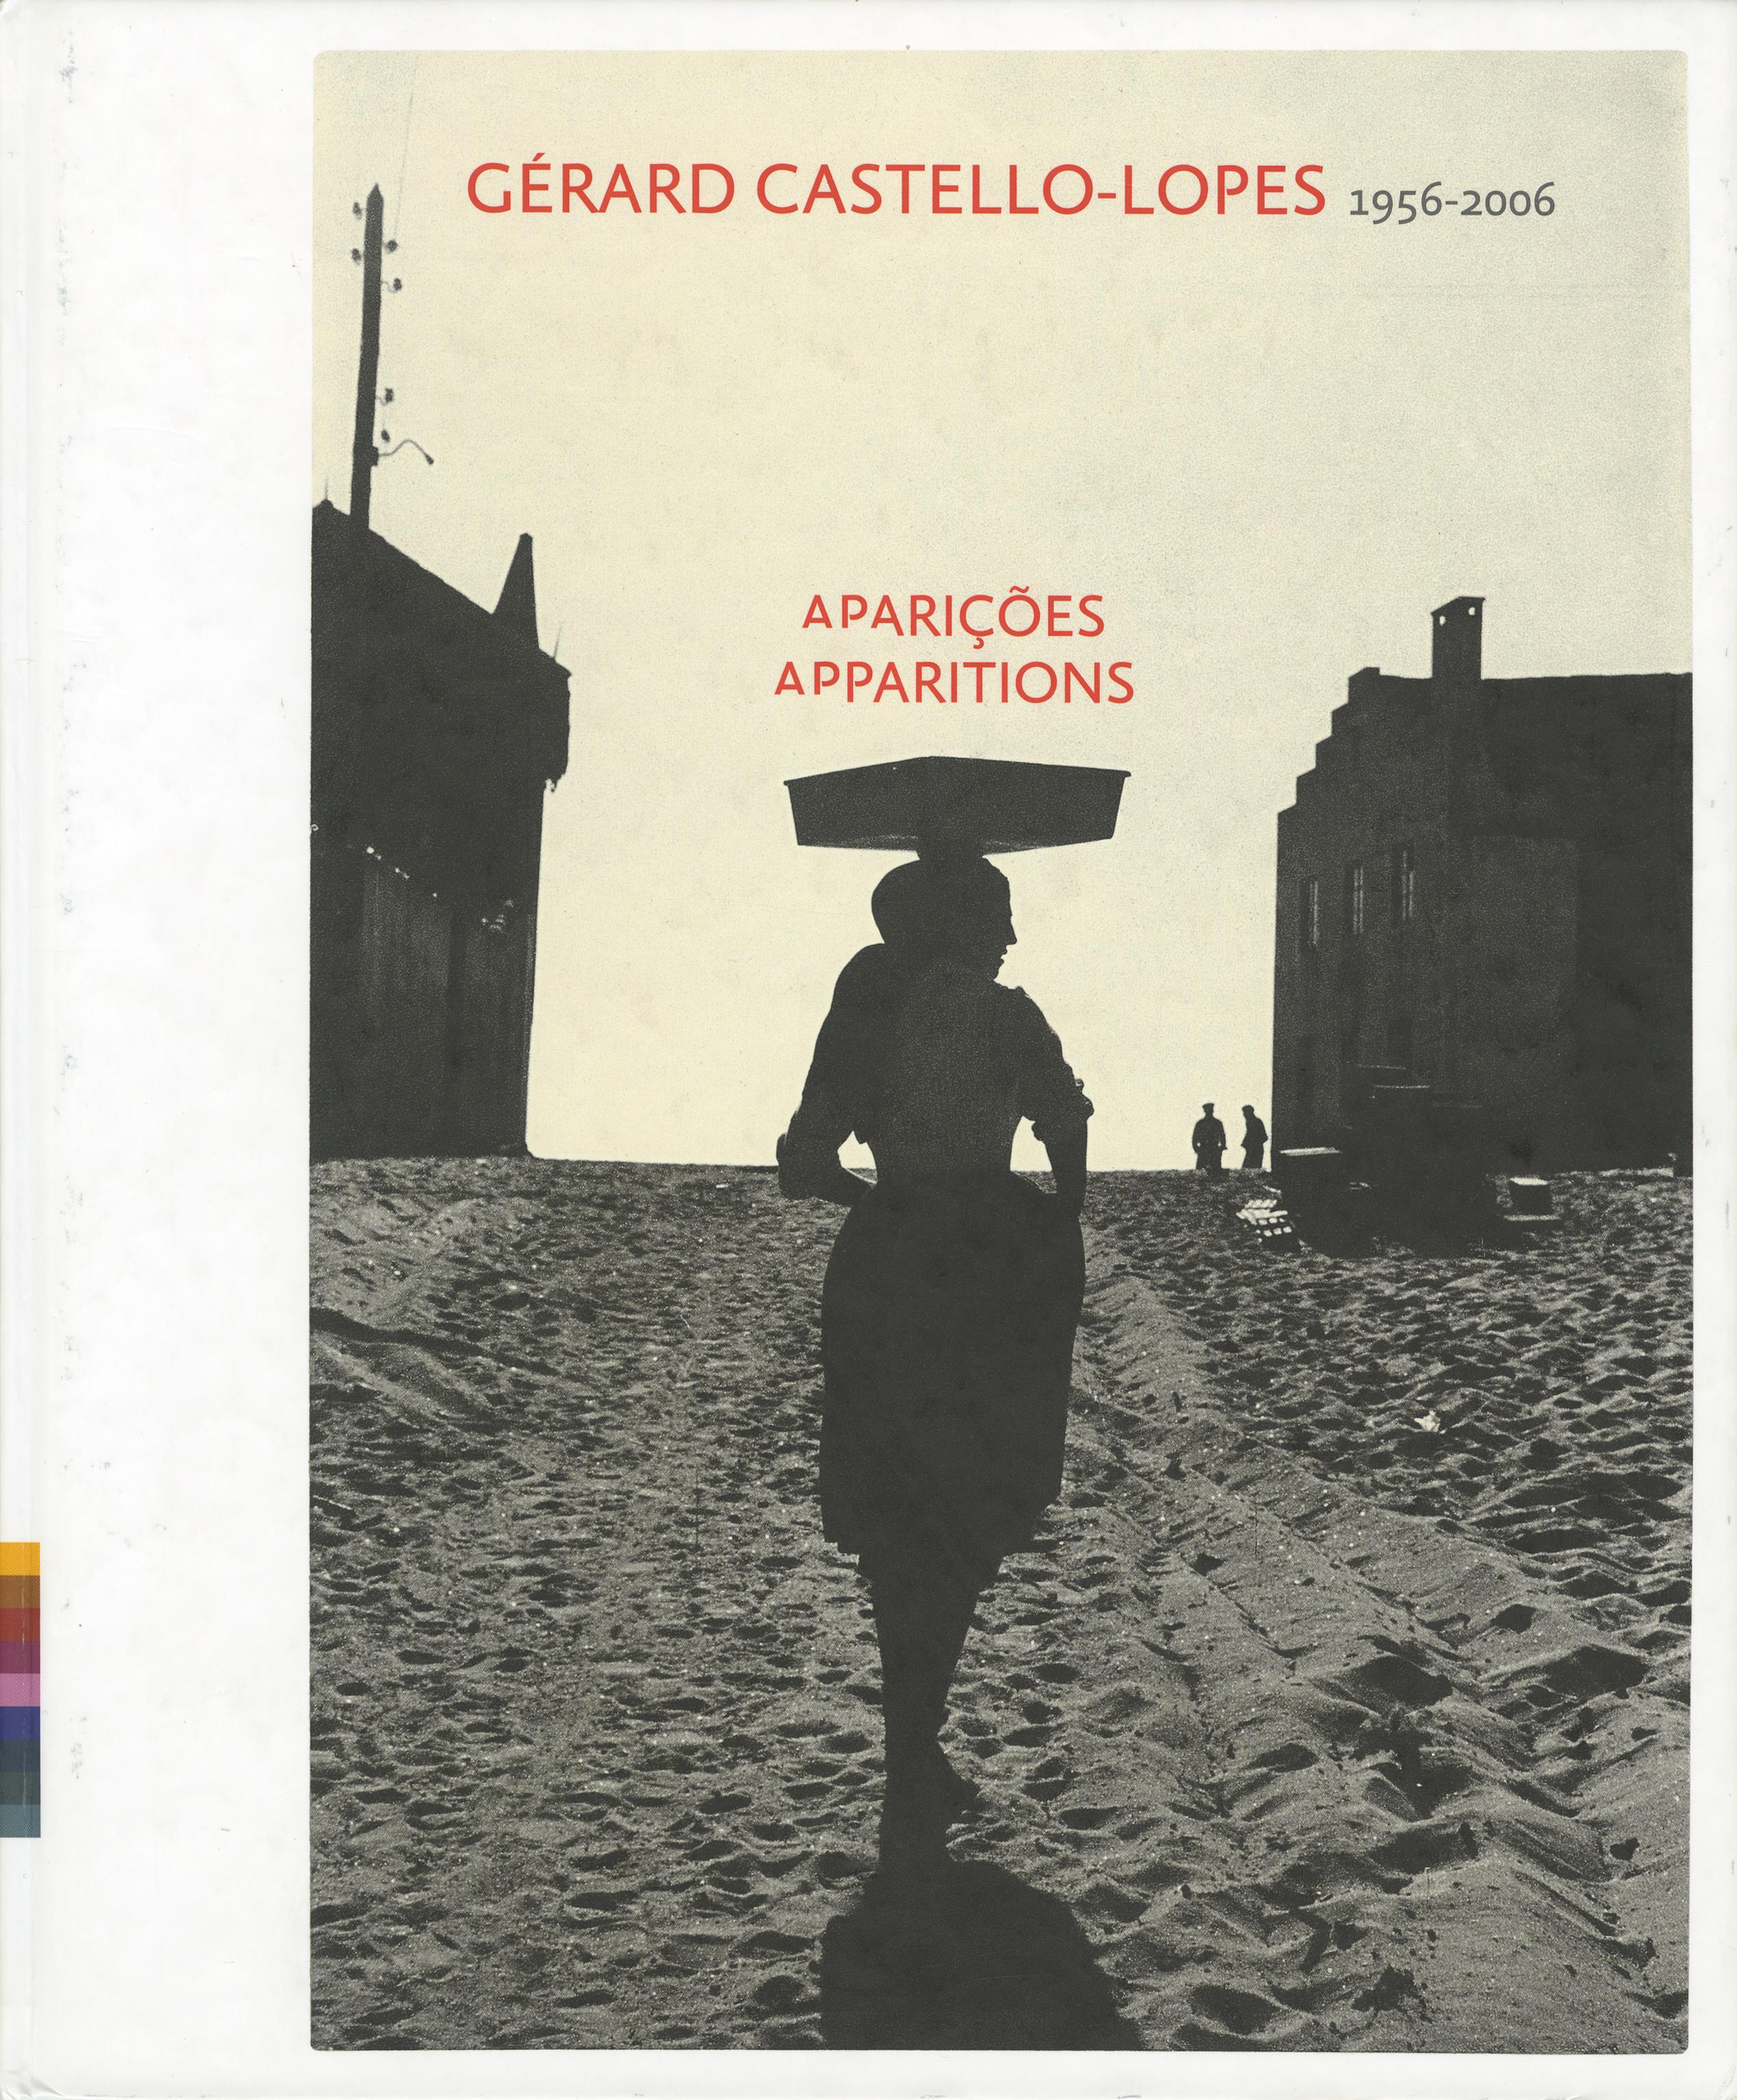 Aparições. Apparitions. Gérard Castello-Lopes, 1956 – 2006